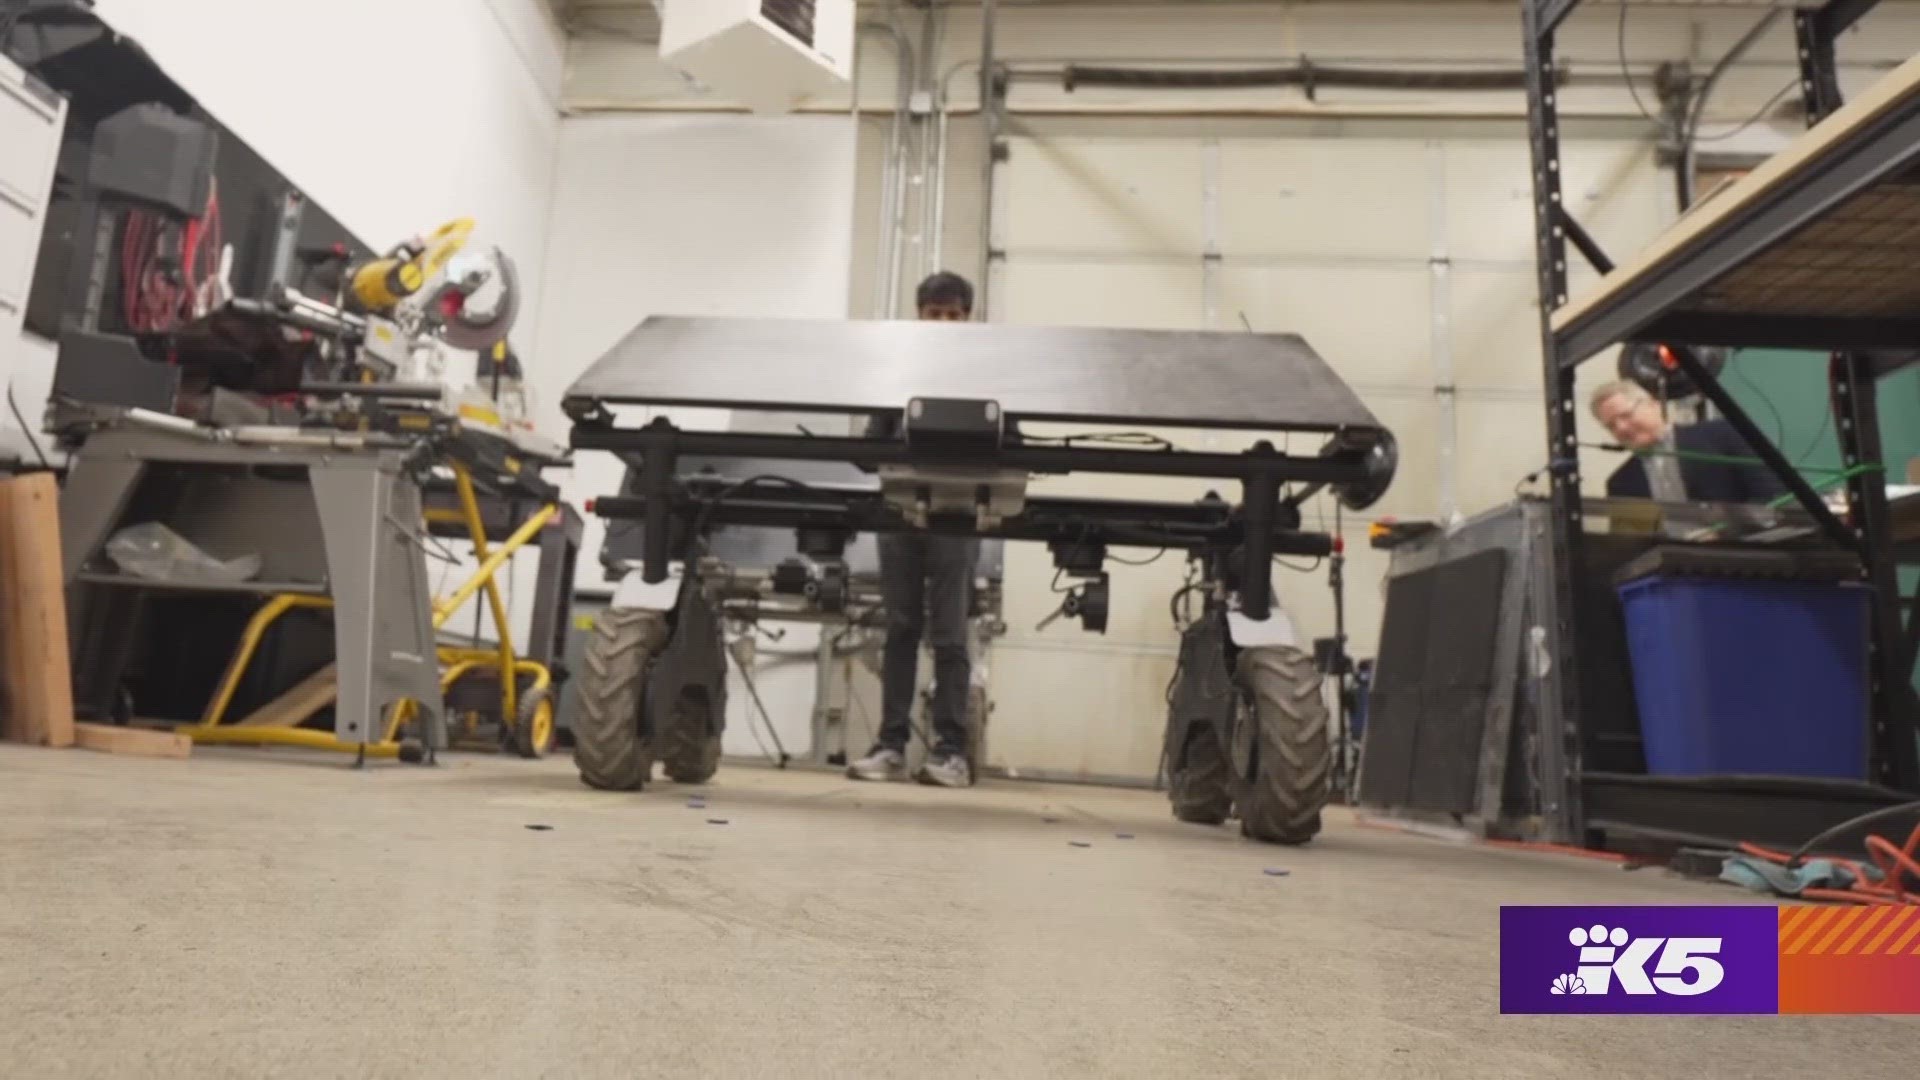 Aigen is using solar-powered autonomous robots to change the future of farming. #k5evening